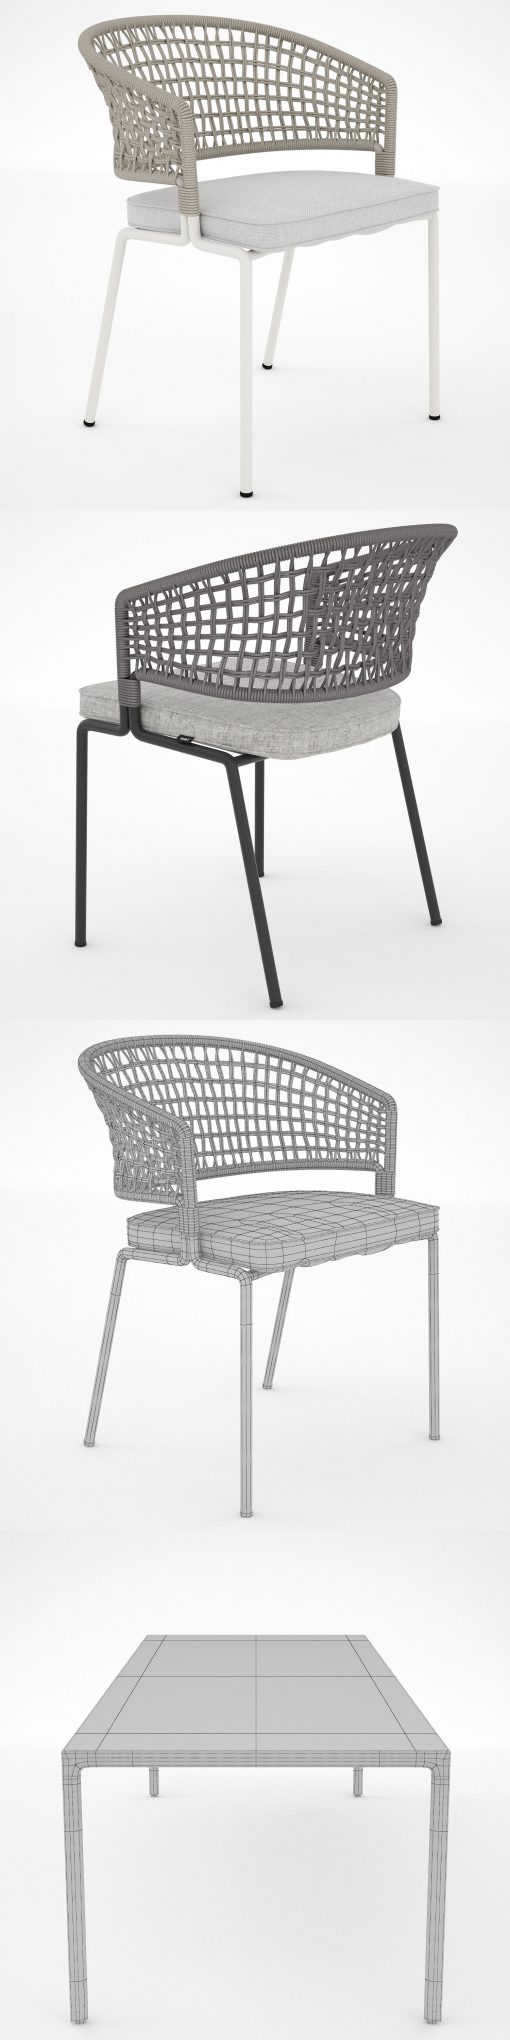 Tribu Contour Table & Chair 3D Model 3